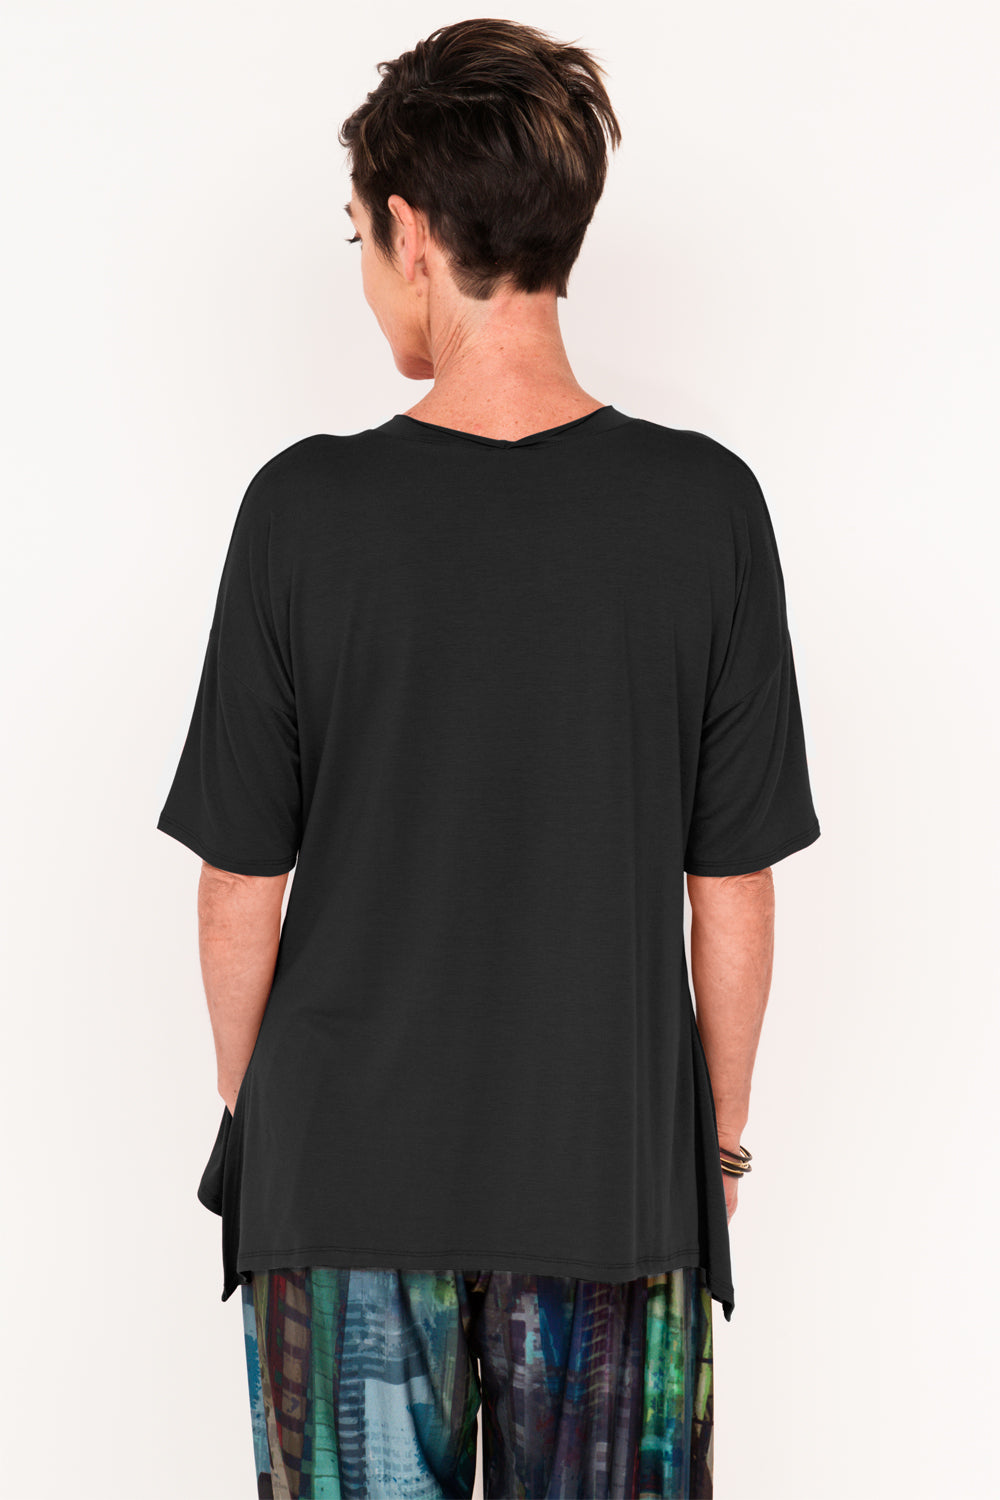 black-t-shirt-women-active-wear-athleisure-travel-wear-designer-t-shirt